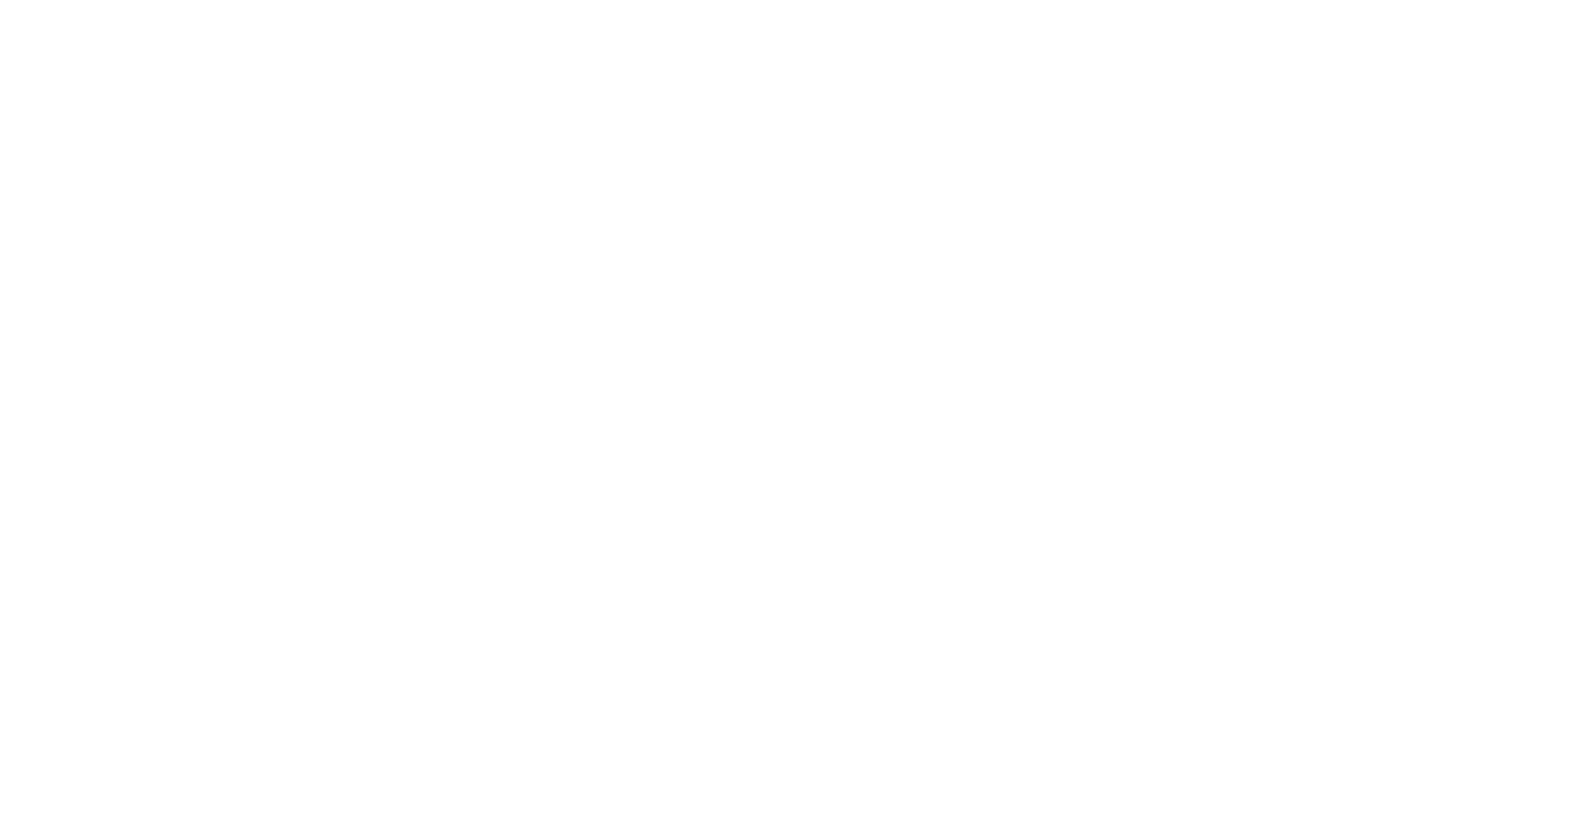 ryde logo pour fonds sombres (PNG transparent)